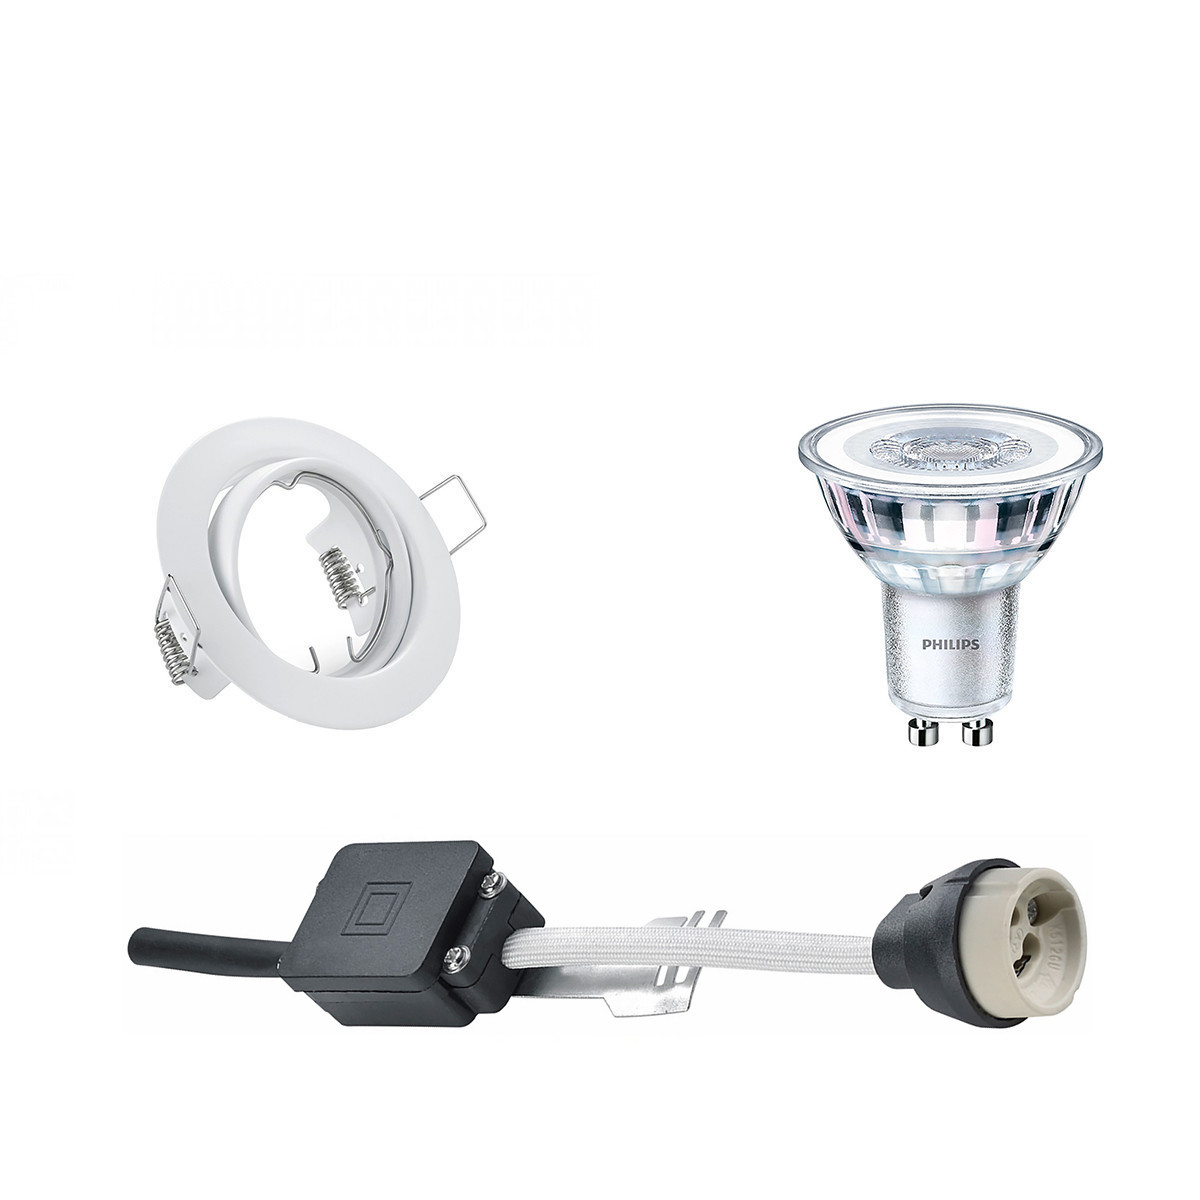 LED Spot Set - GU10 Fitting - Inbouw Rond - Mat Wit - Kantelbaar ?83mm - Philips - CorePro 827 36D -